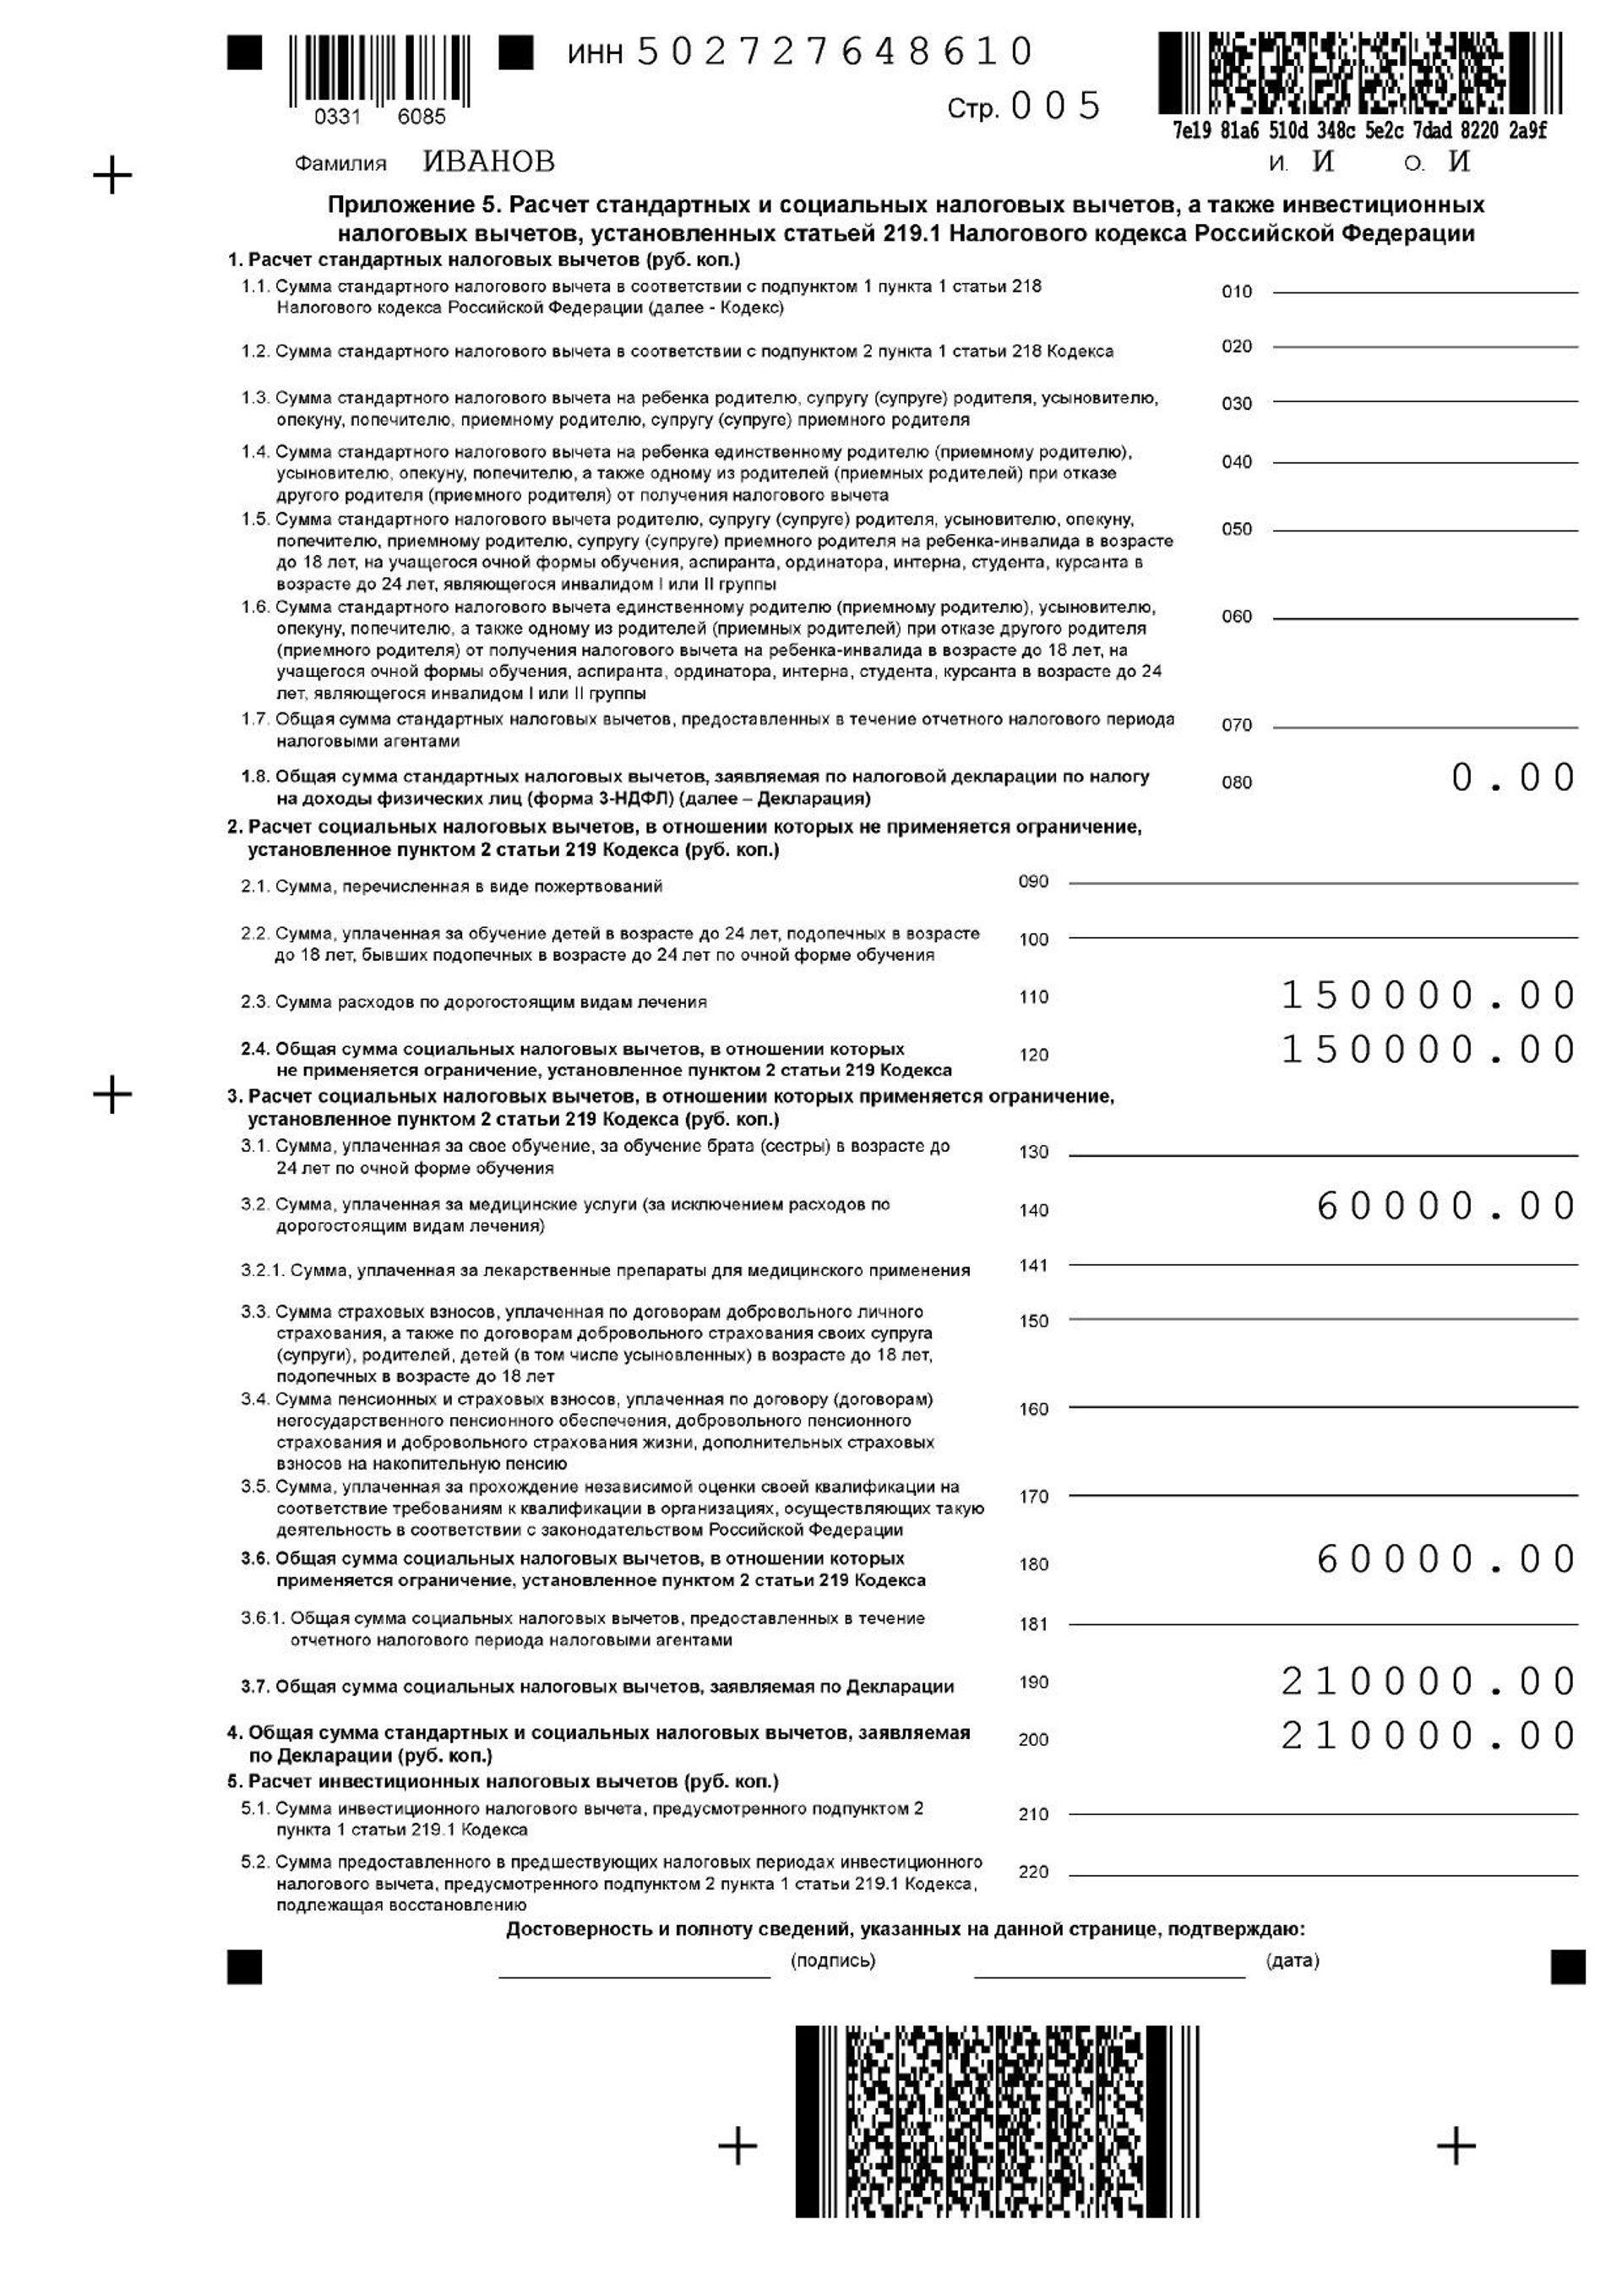 Образец заполнения налоговой декларации 3-НДФЛ